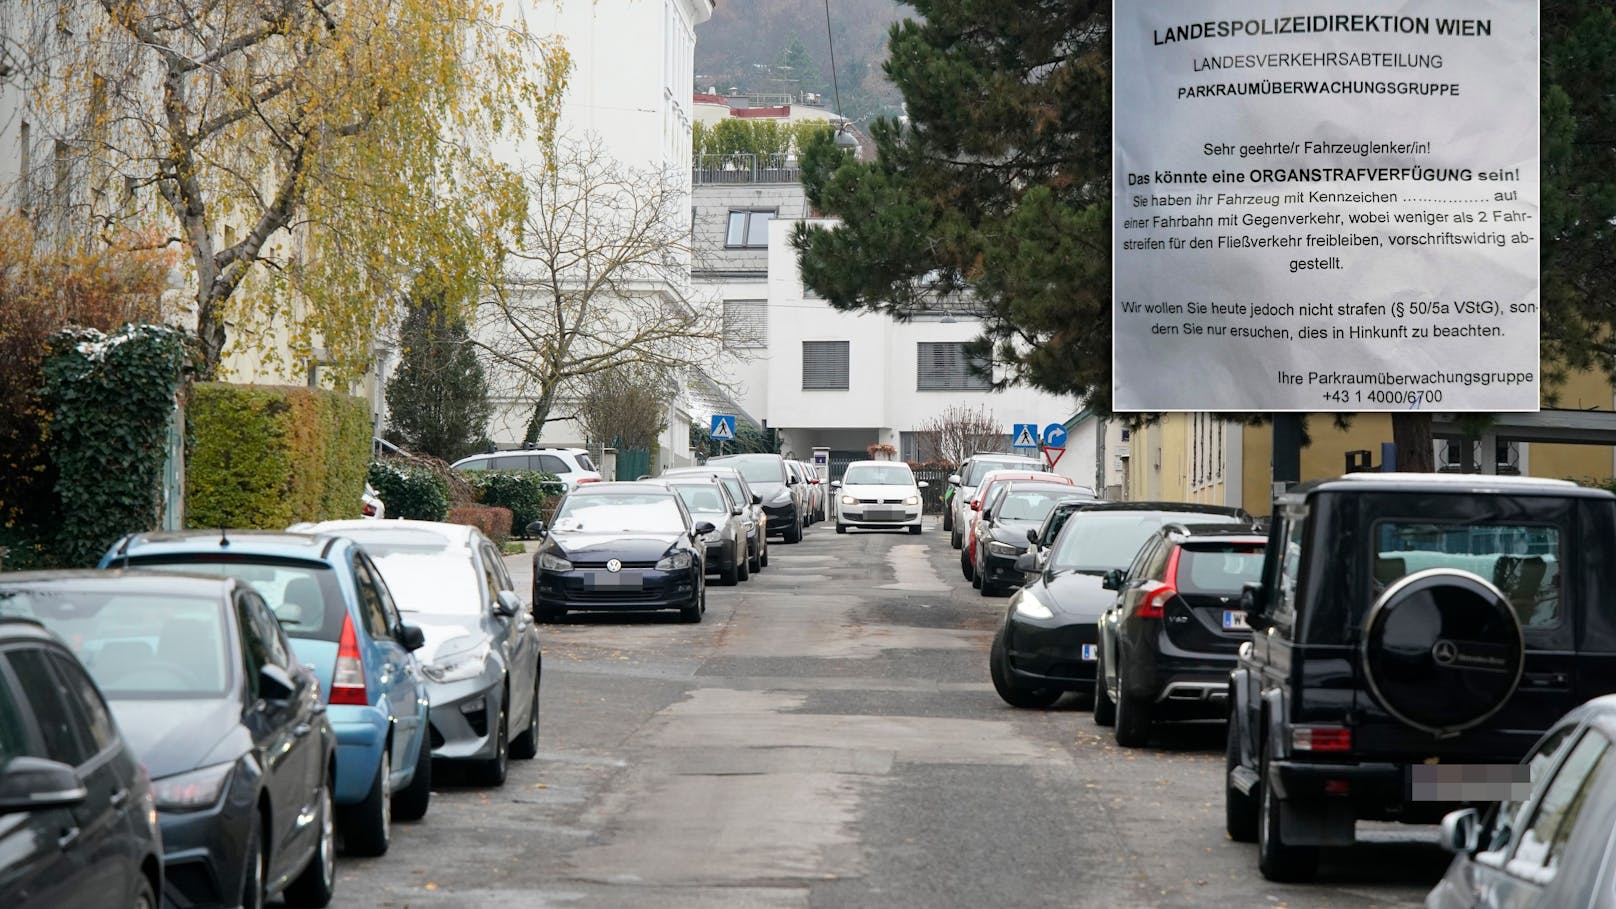 Anrainer-Ärger: "Dürfen plötzlich nicht mehr parken"